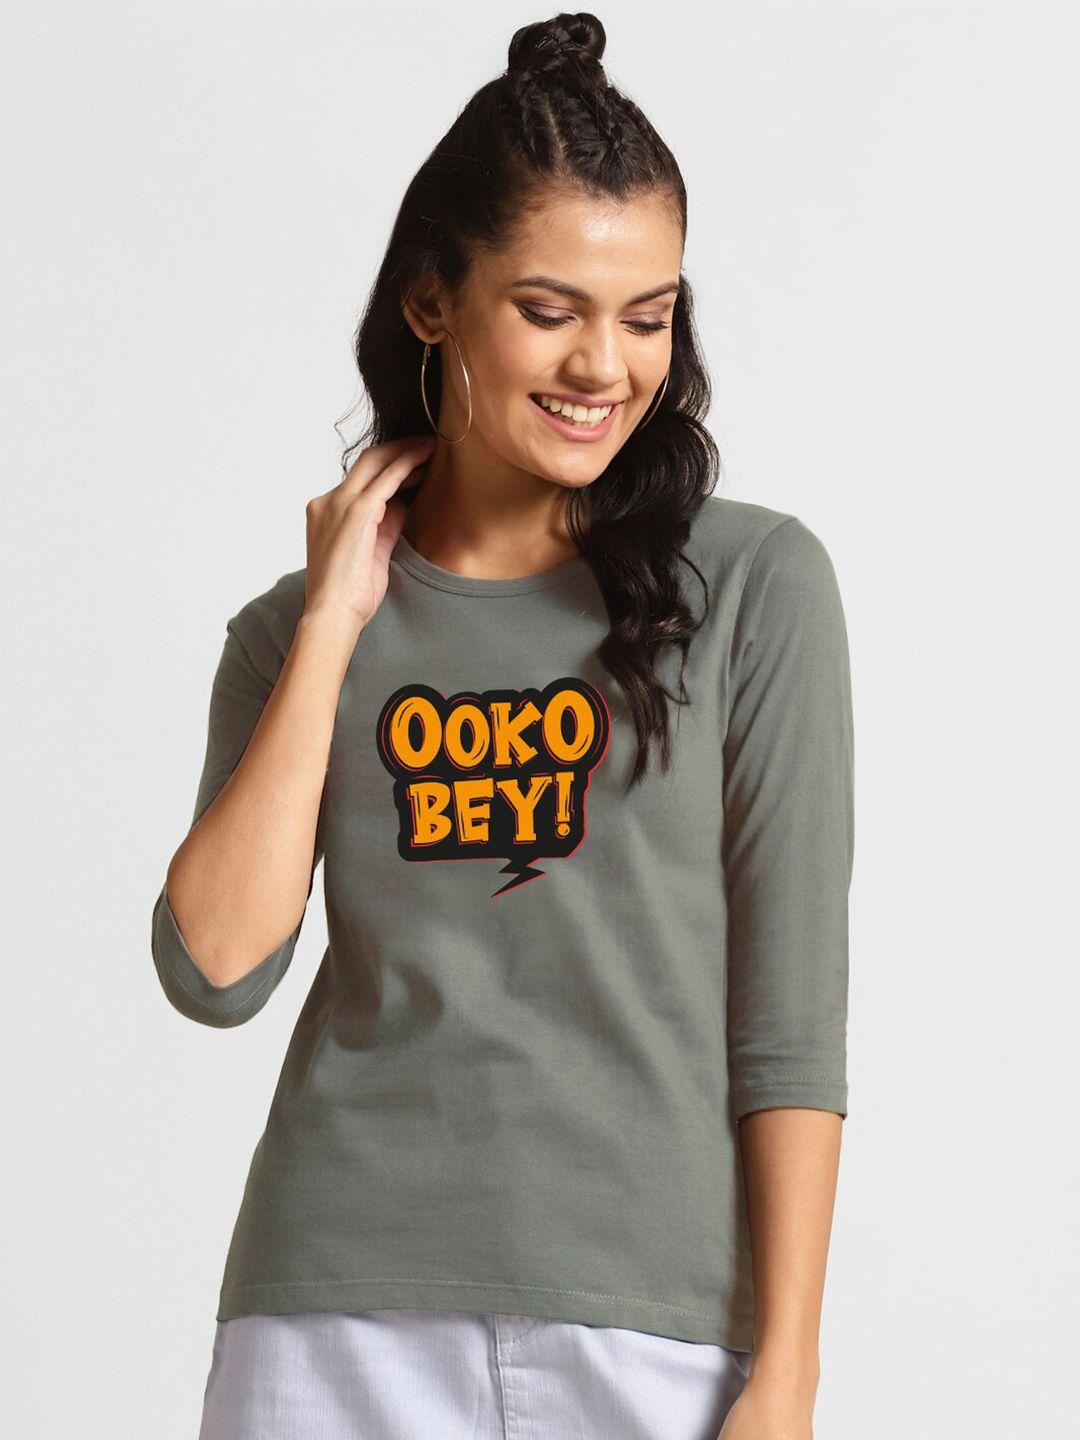 bewakoof women grey typography printed t-shirt